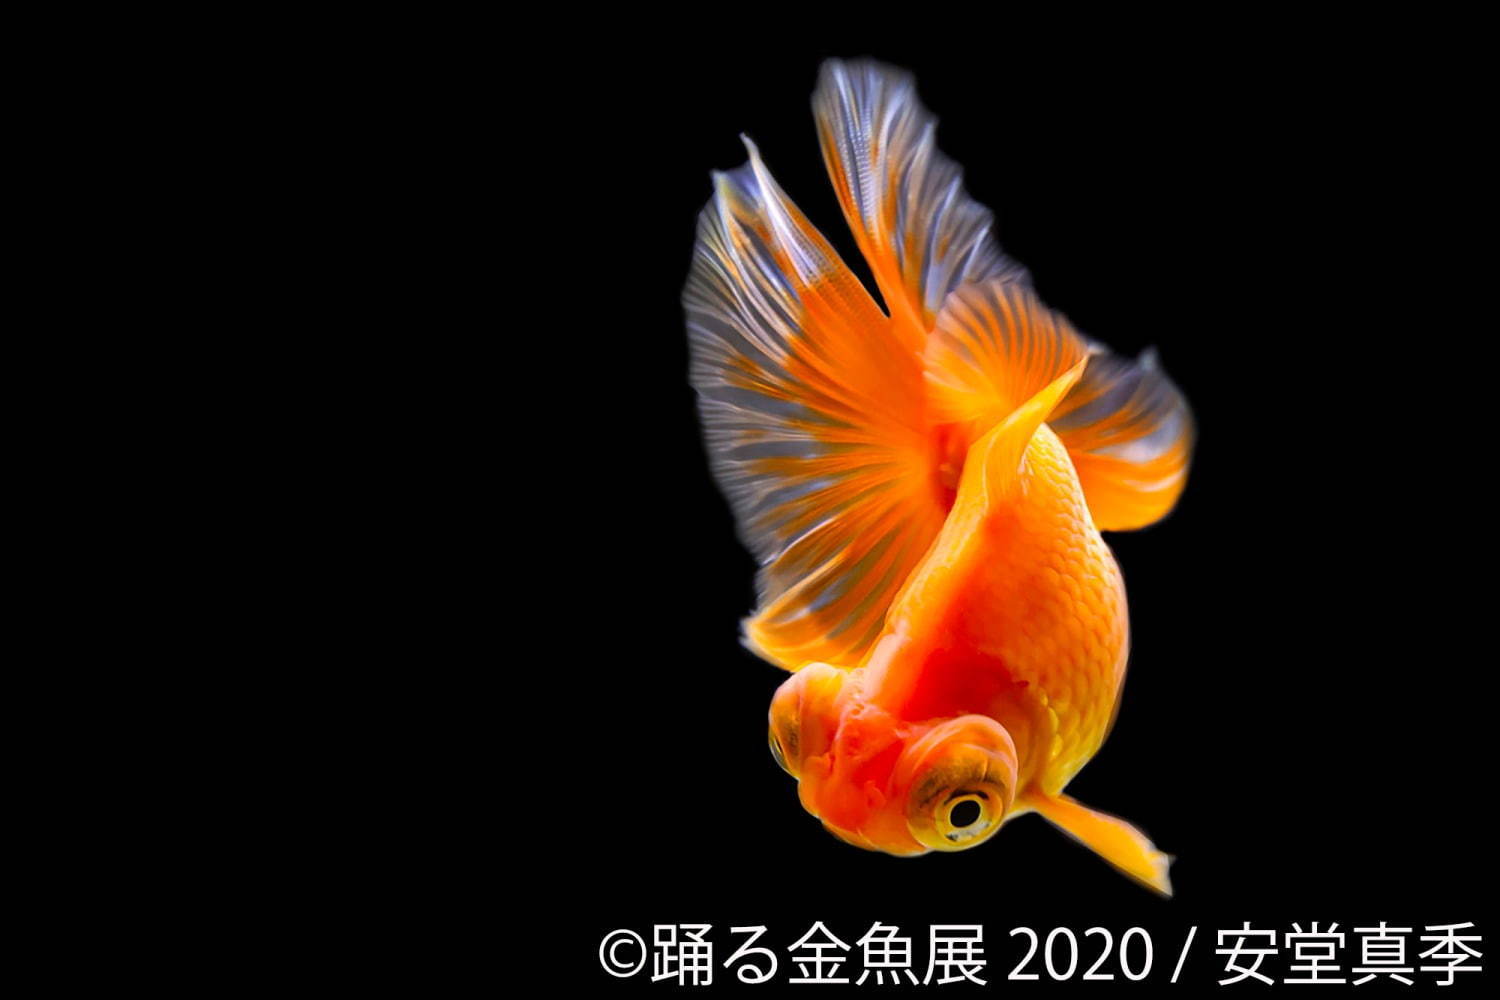 踊る金魚展 東京 名古屋で開催 年7月2日 エキサイトニュース